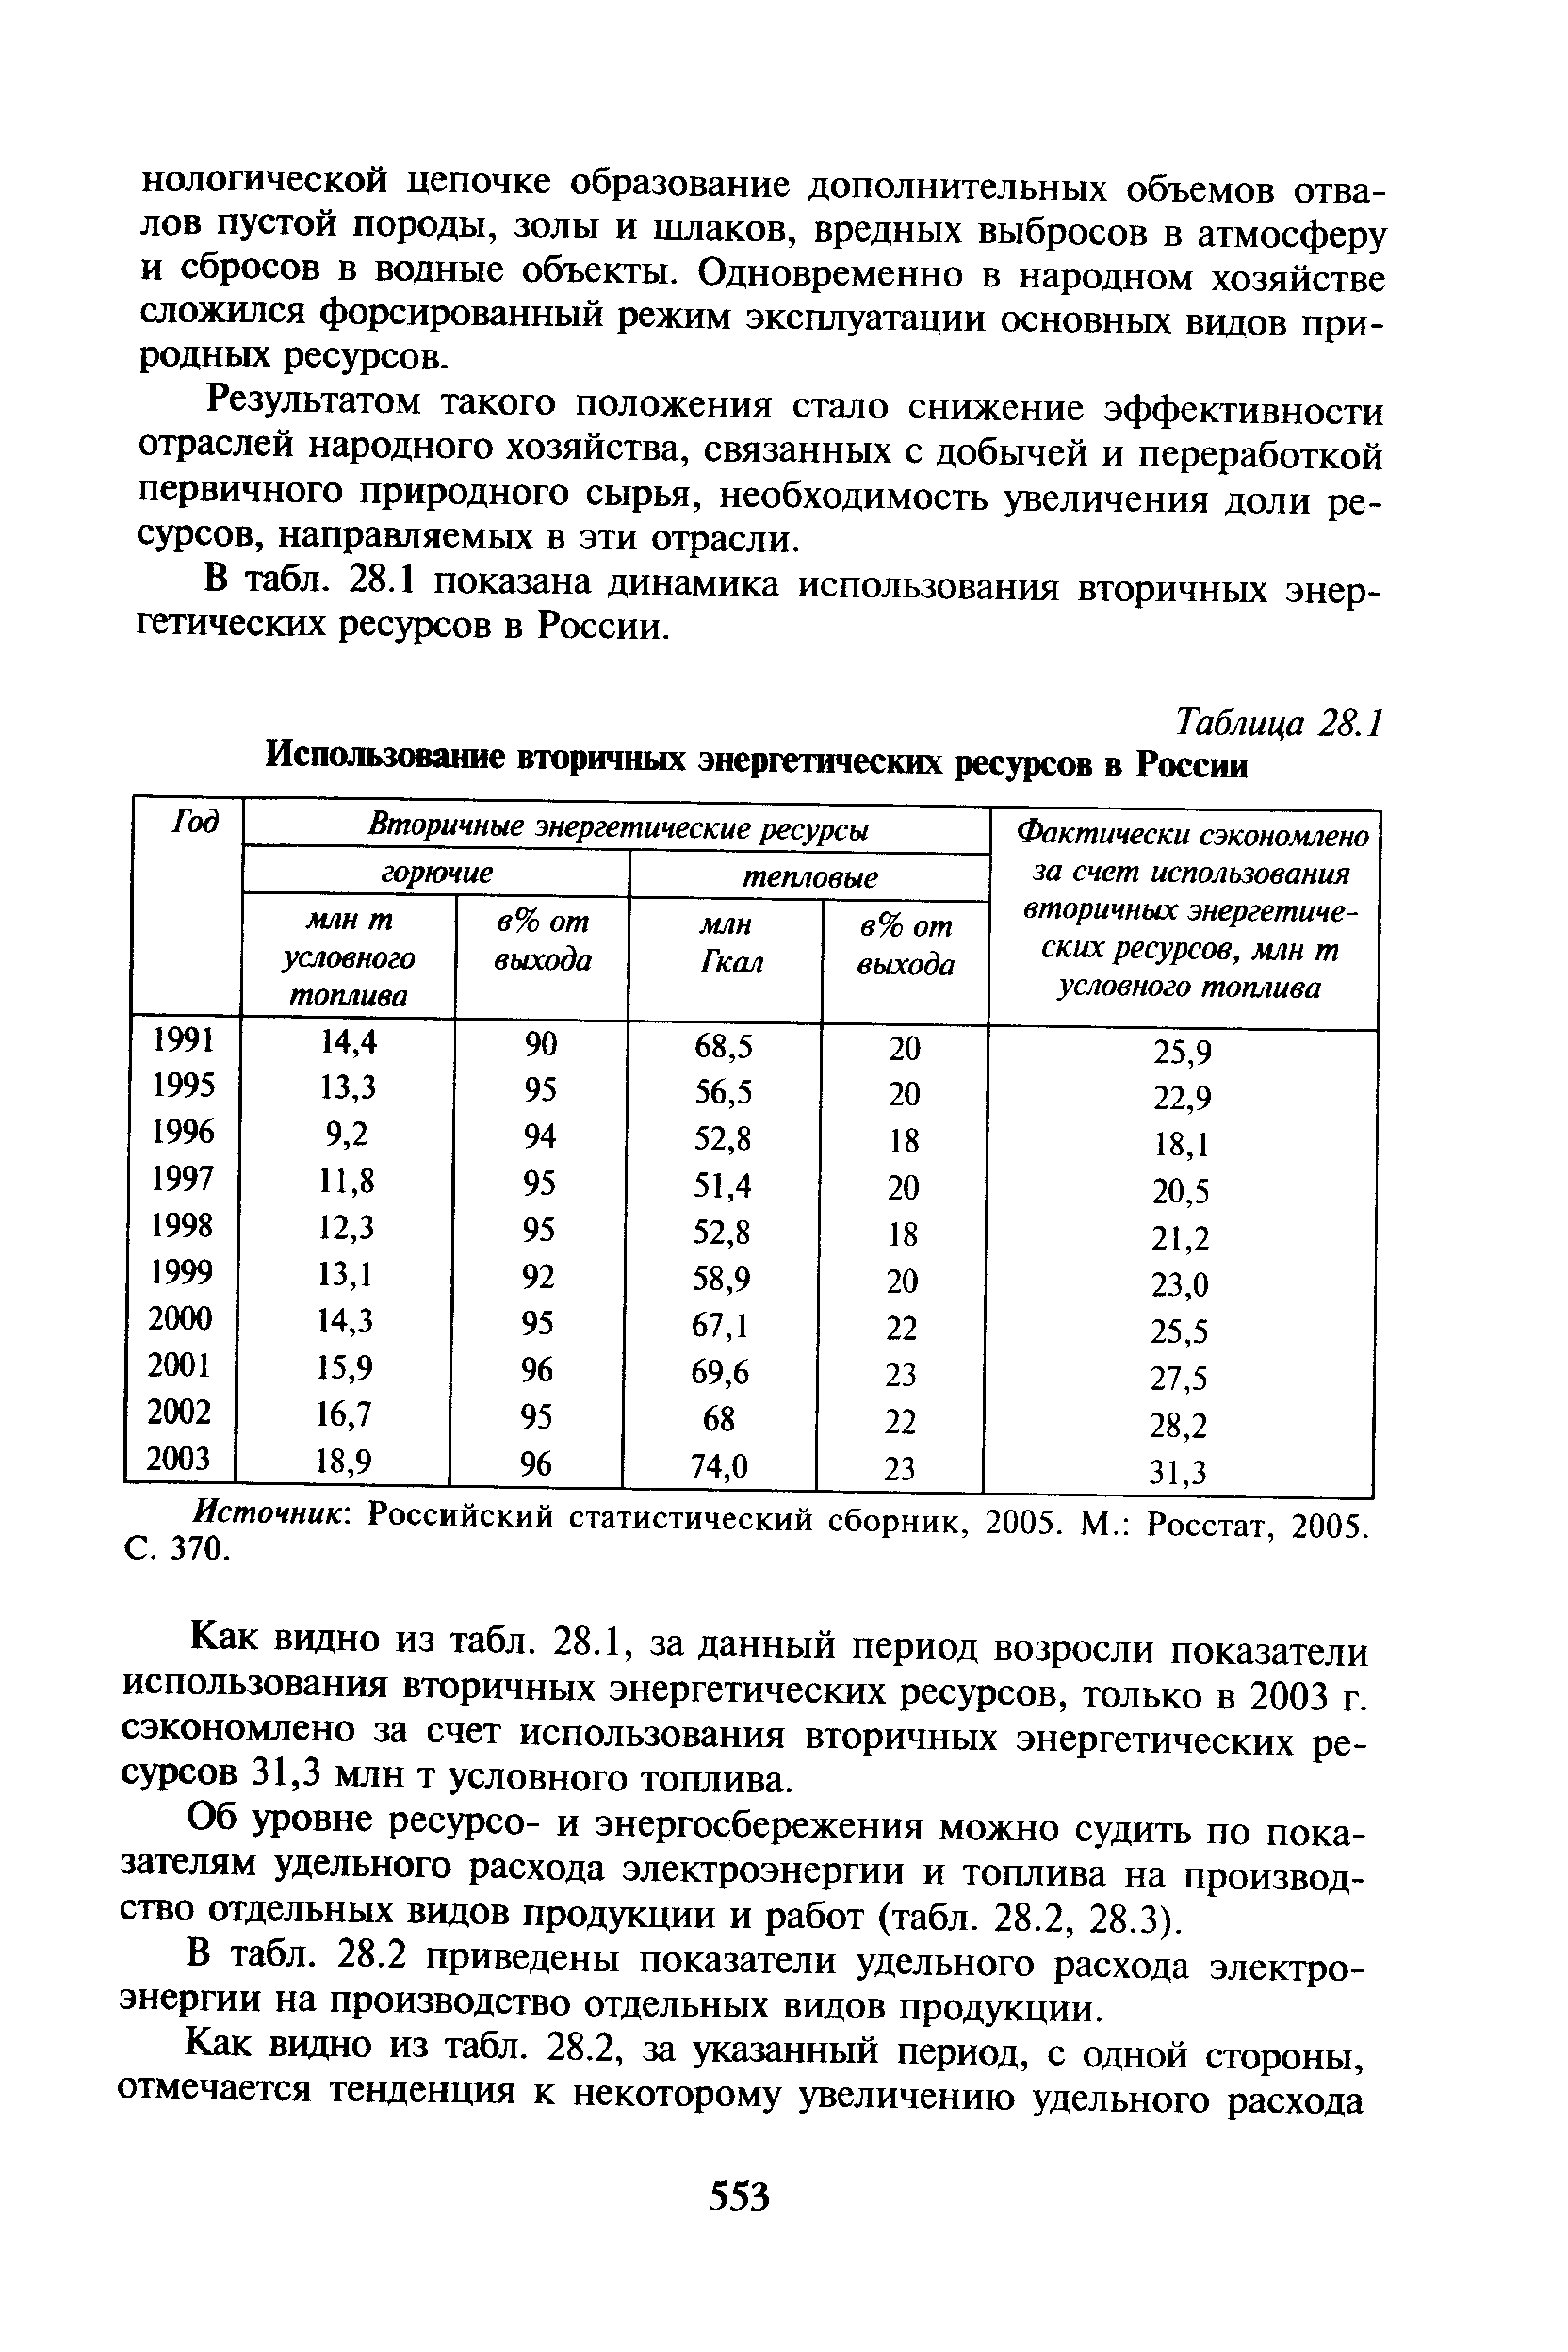 Таблица 28.1 Использование вторичных энергетических ресурсов в России
